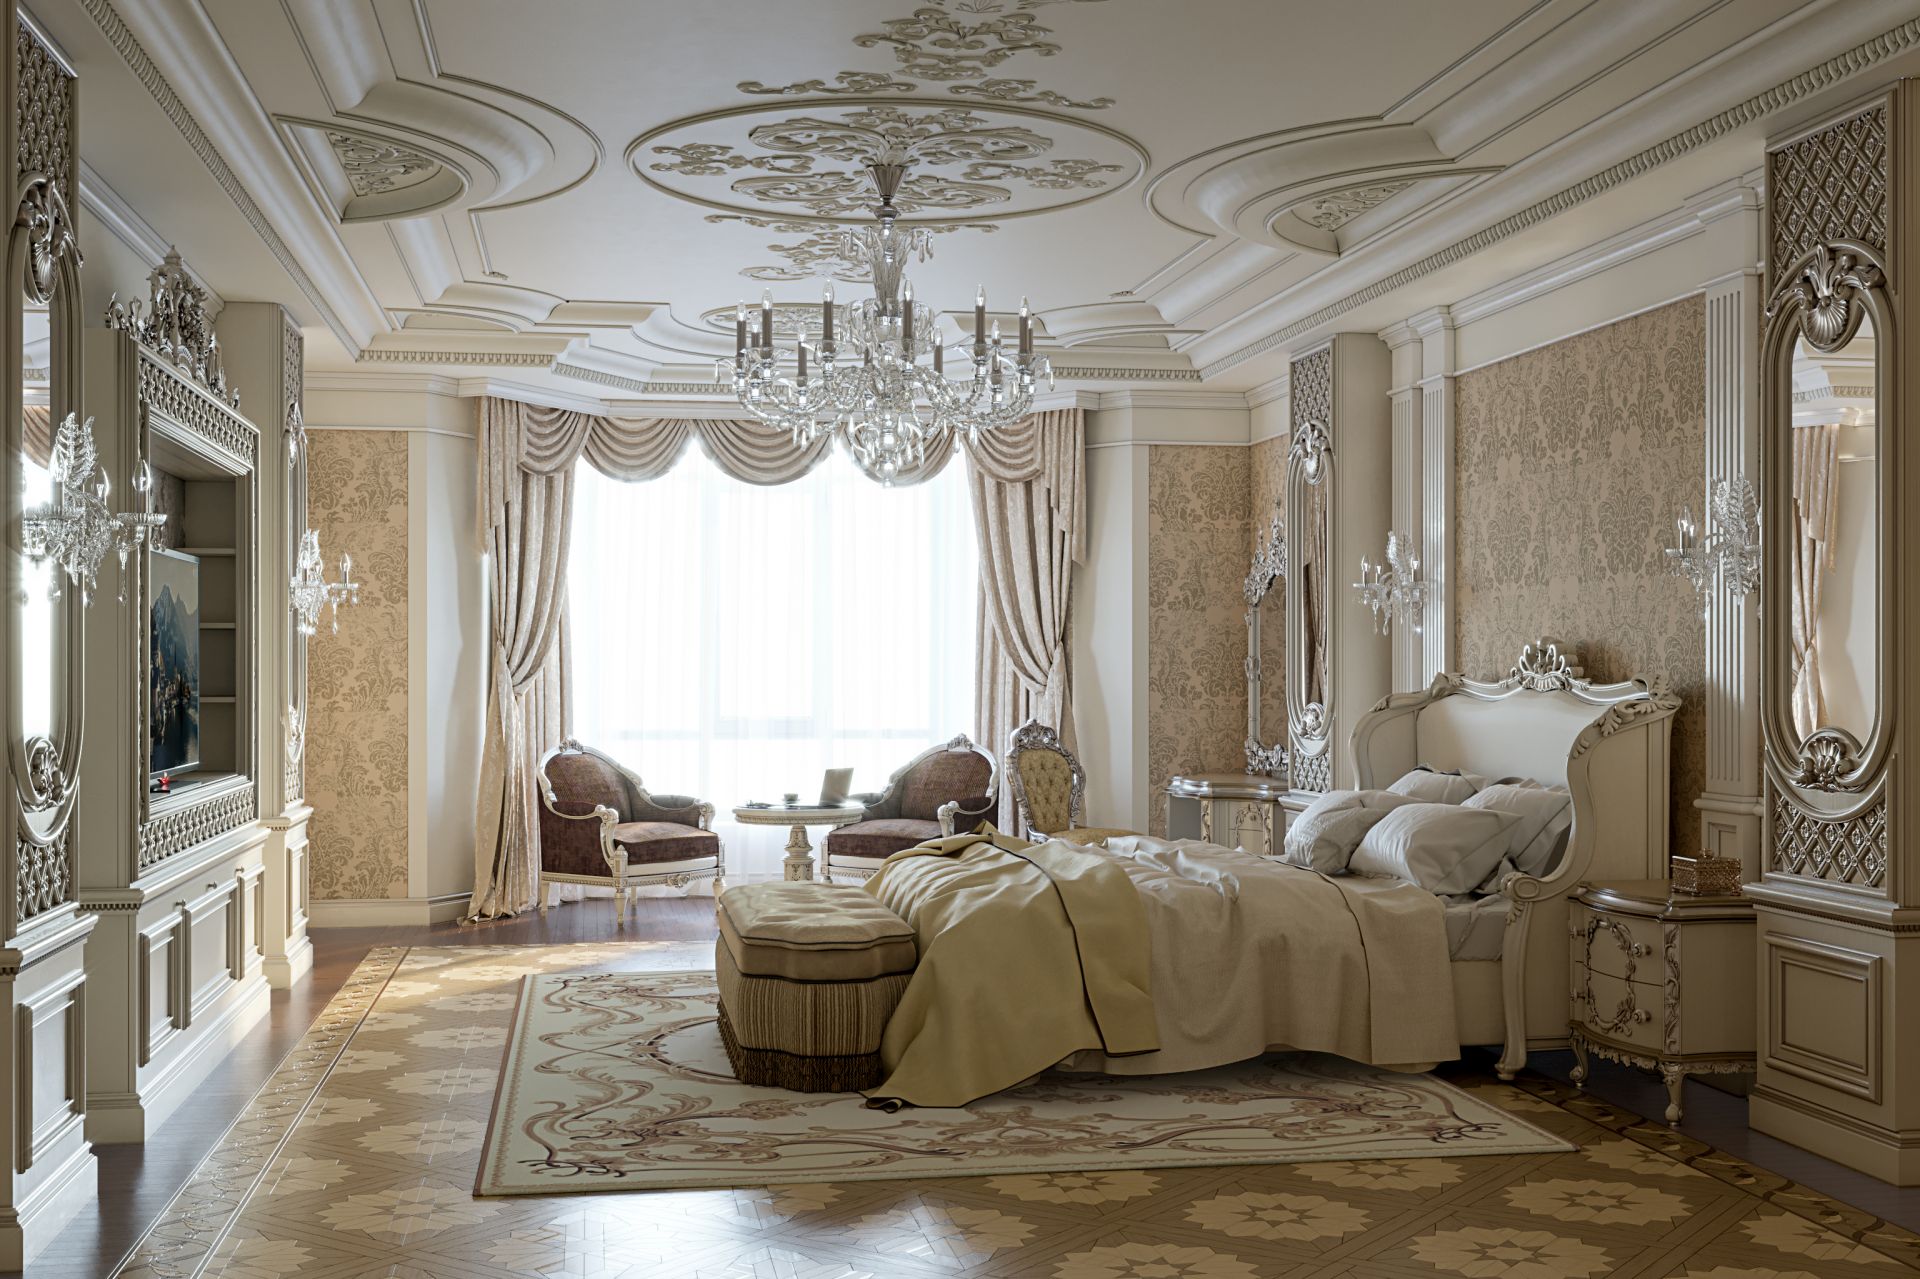 Empire-style apartment interior design